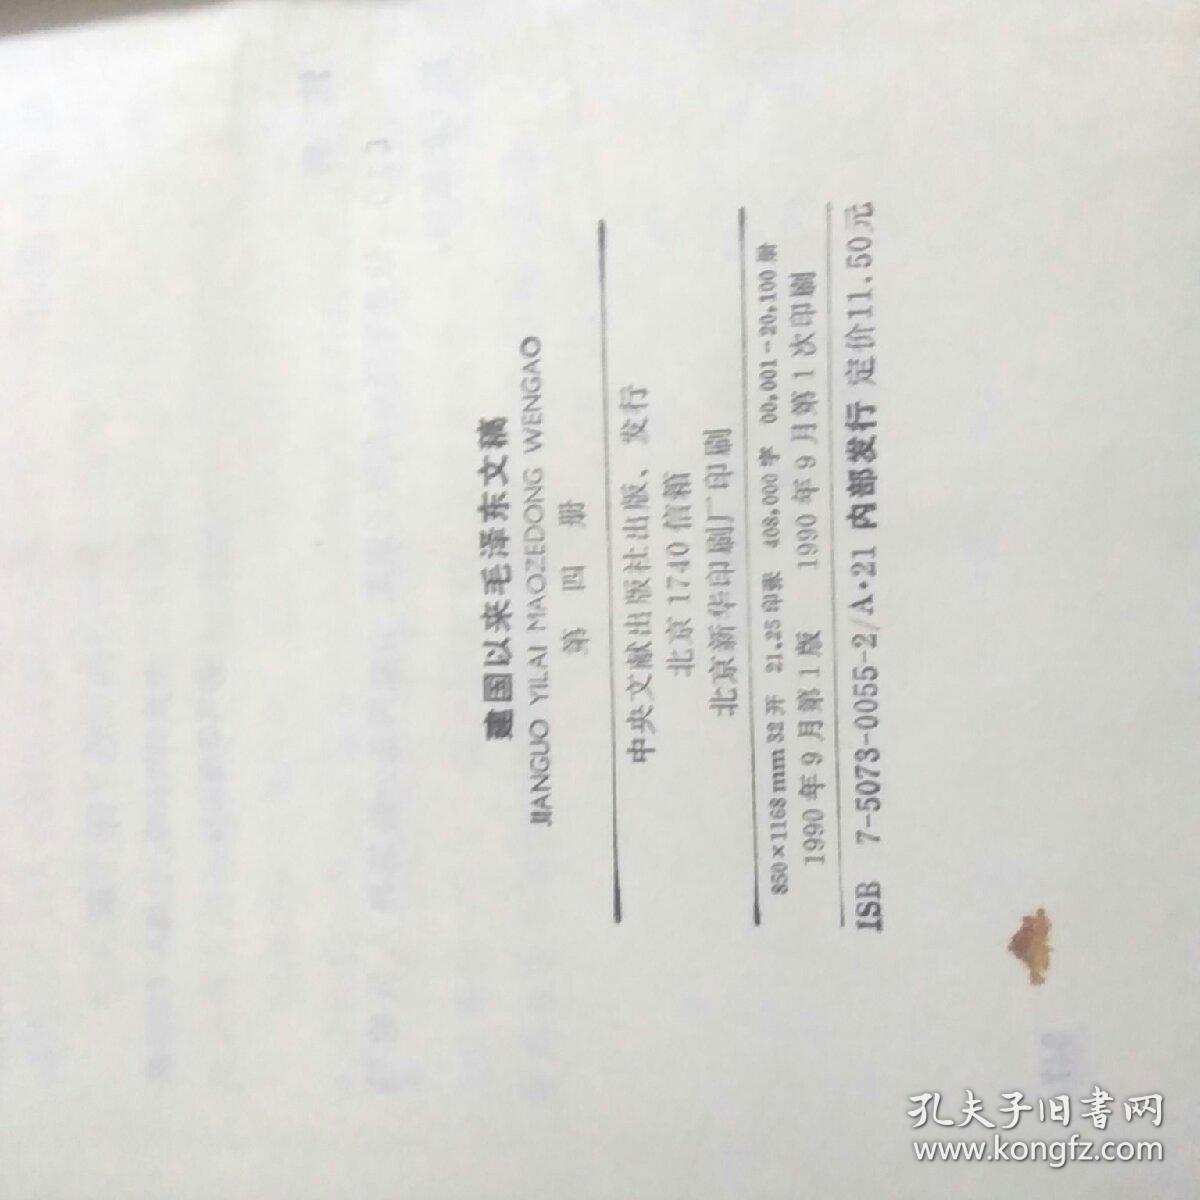 稀缺 建国以来的毛泽东文稿1.2.3.4.5.6.7，精装一版一印品好